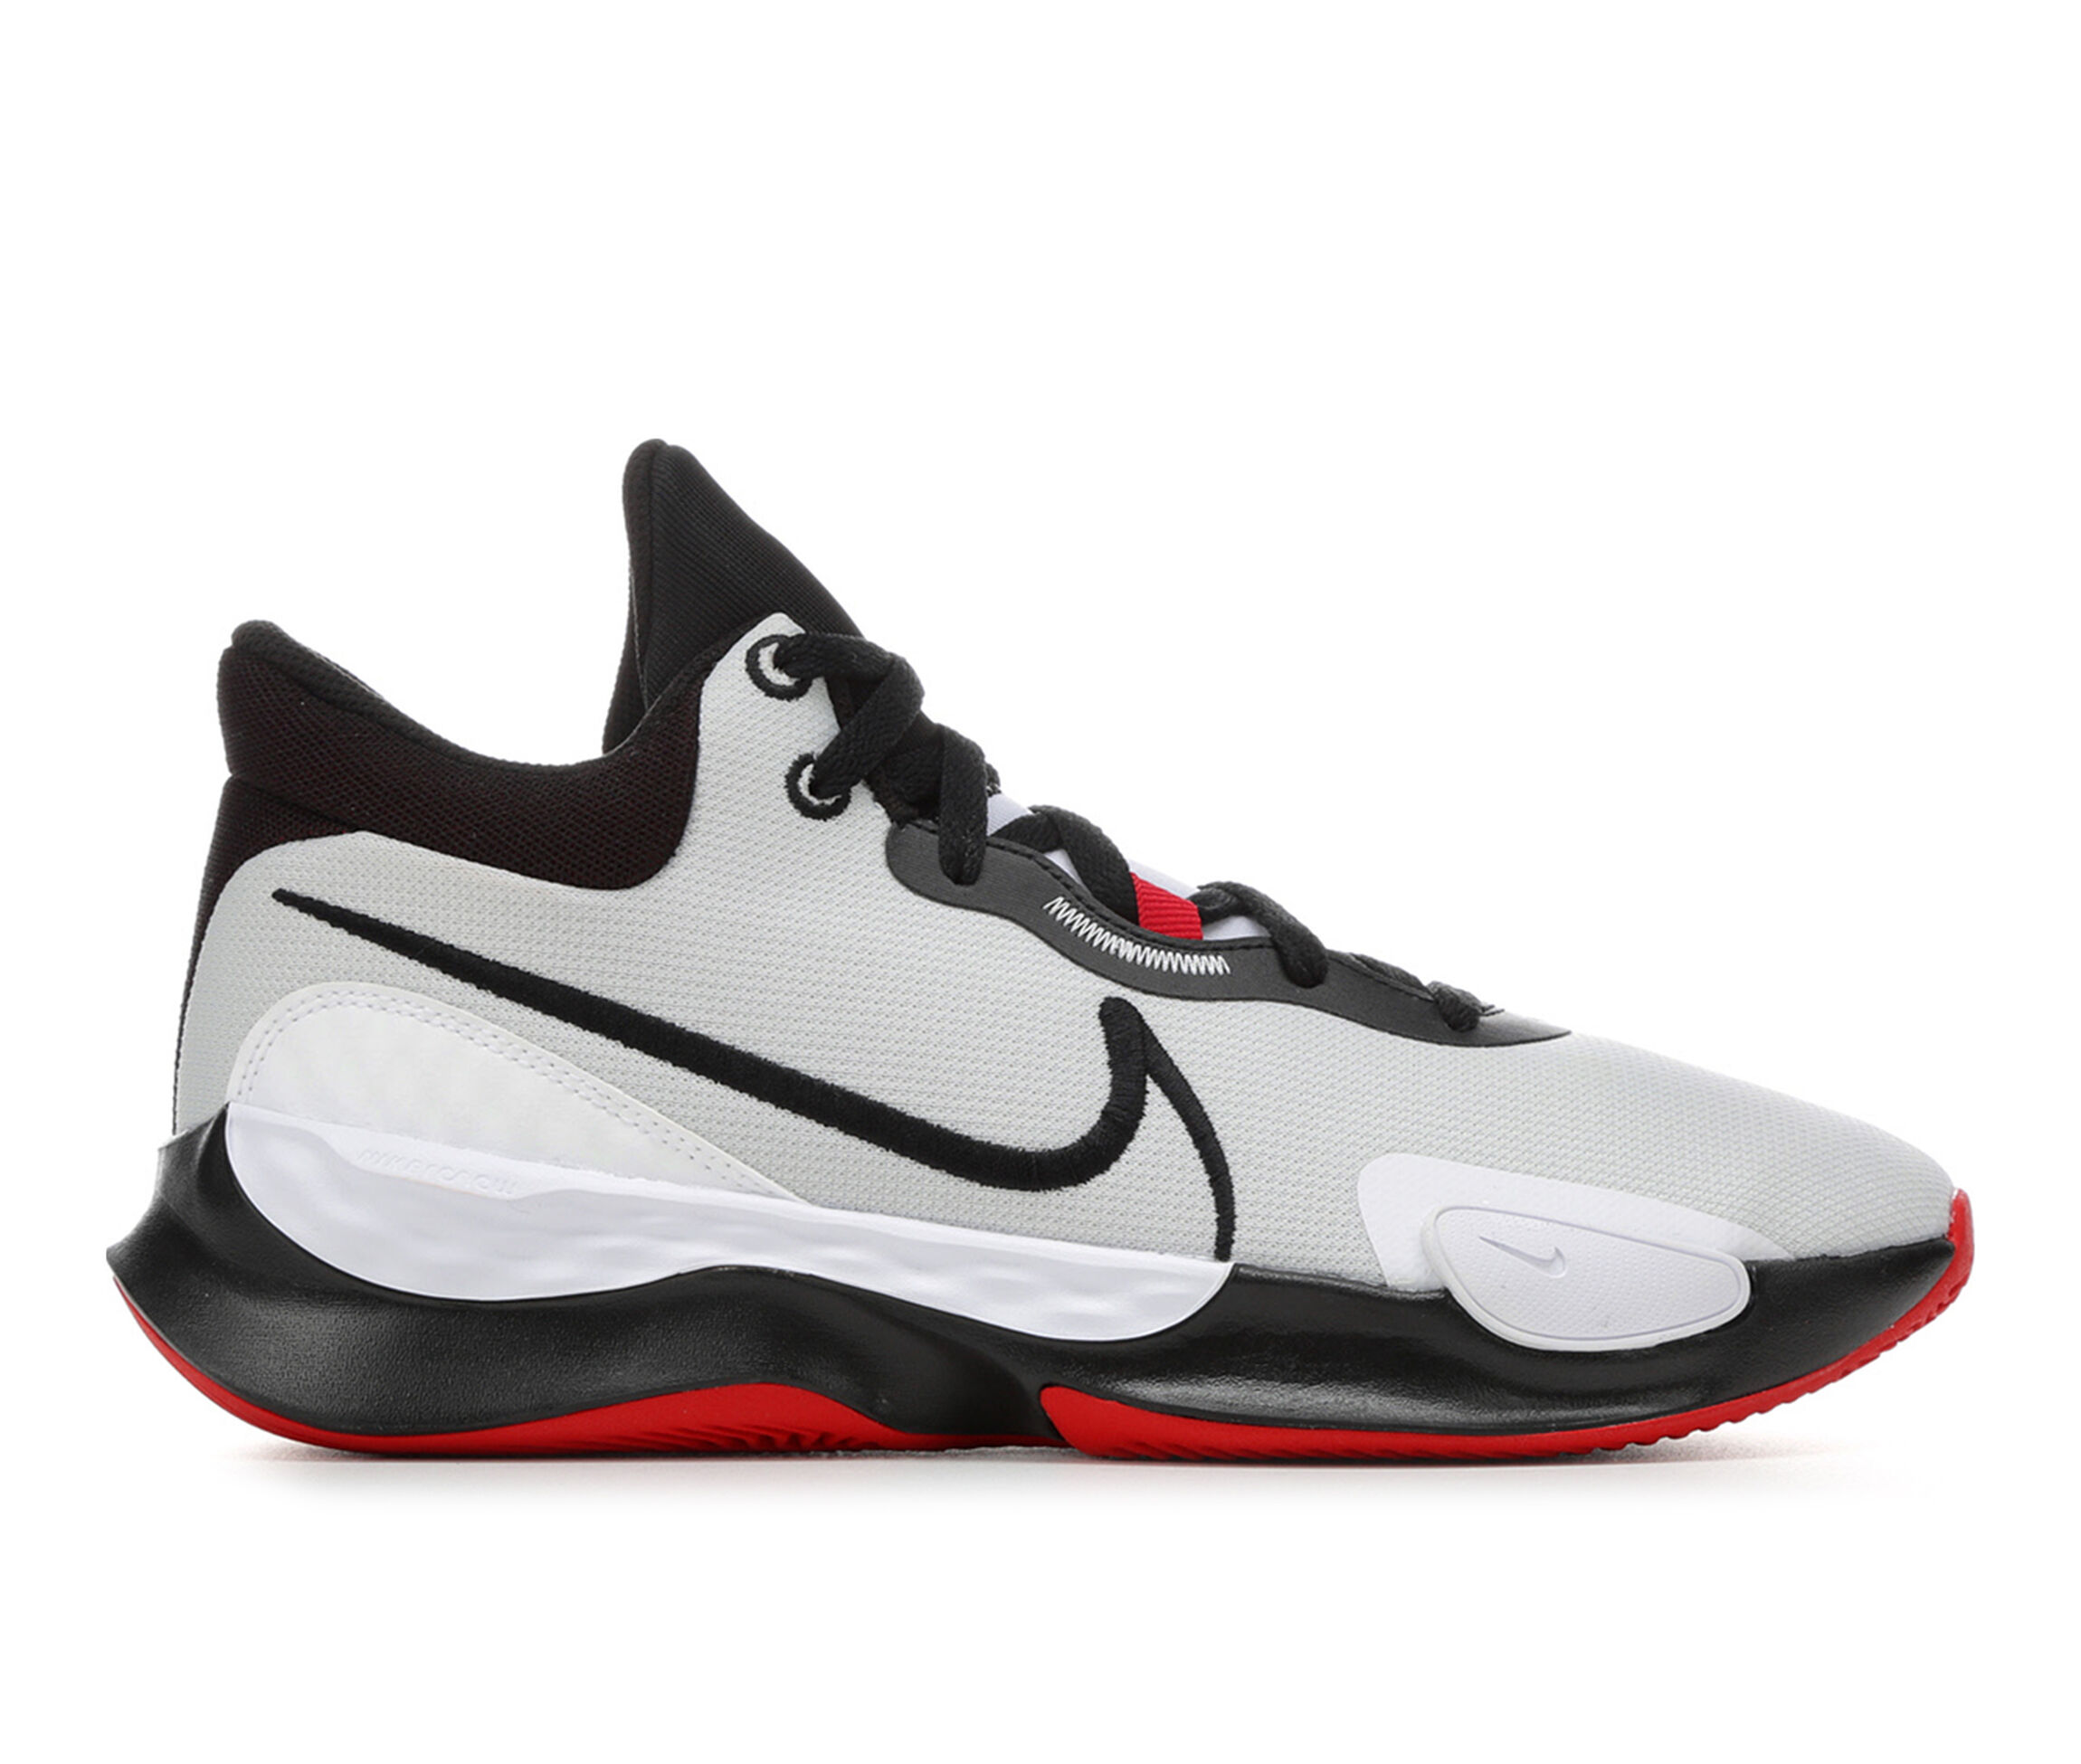 landelijk stel je voor In hoeveelheid Nike Basketball Shoes | Shoe Carnival